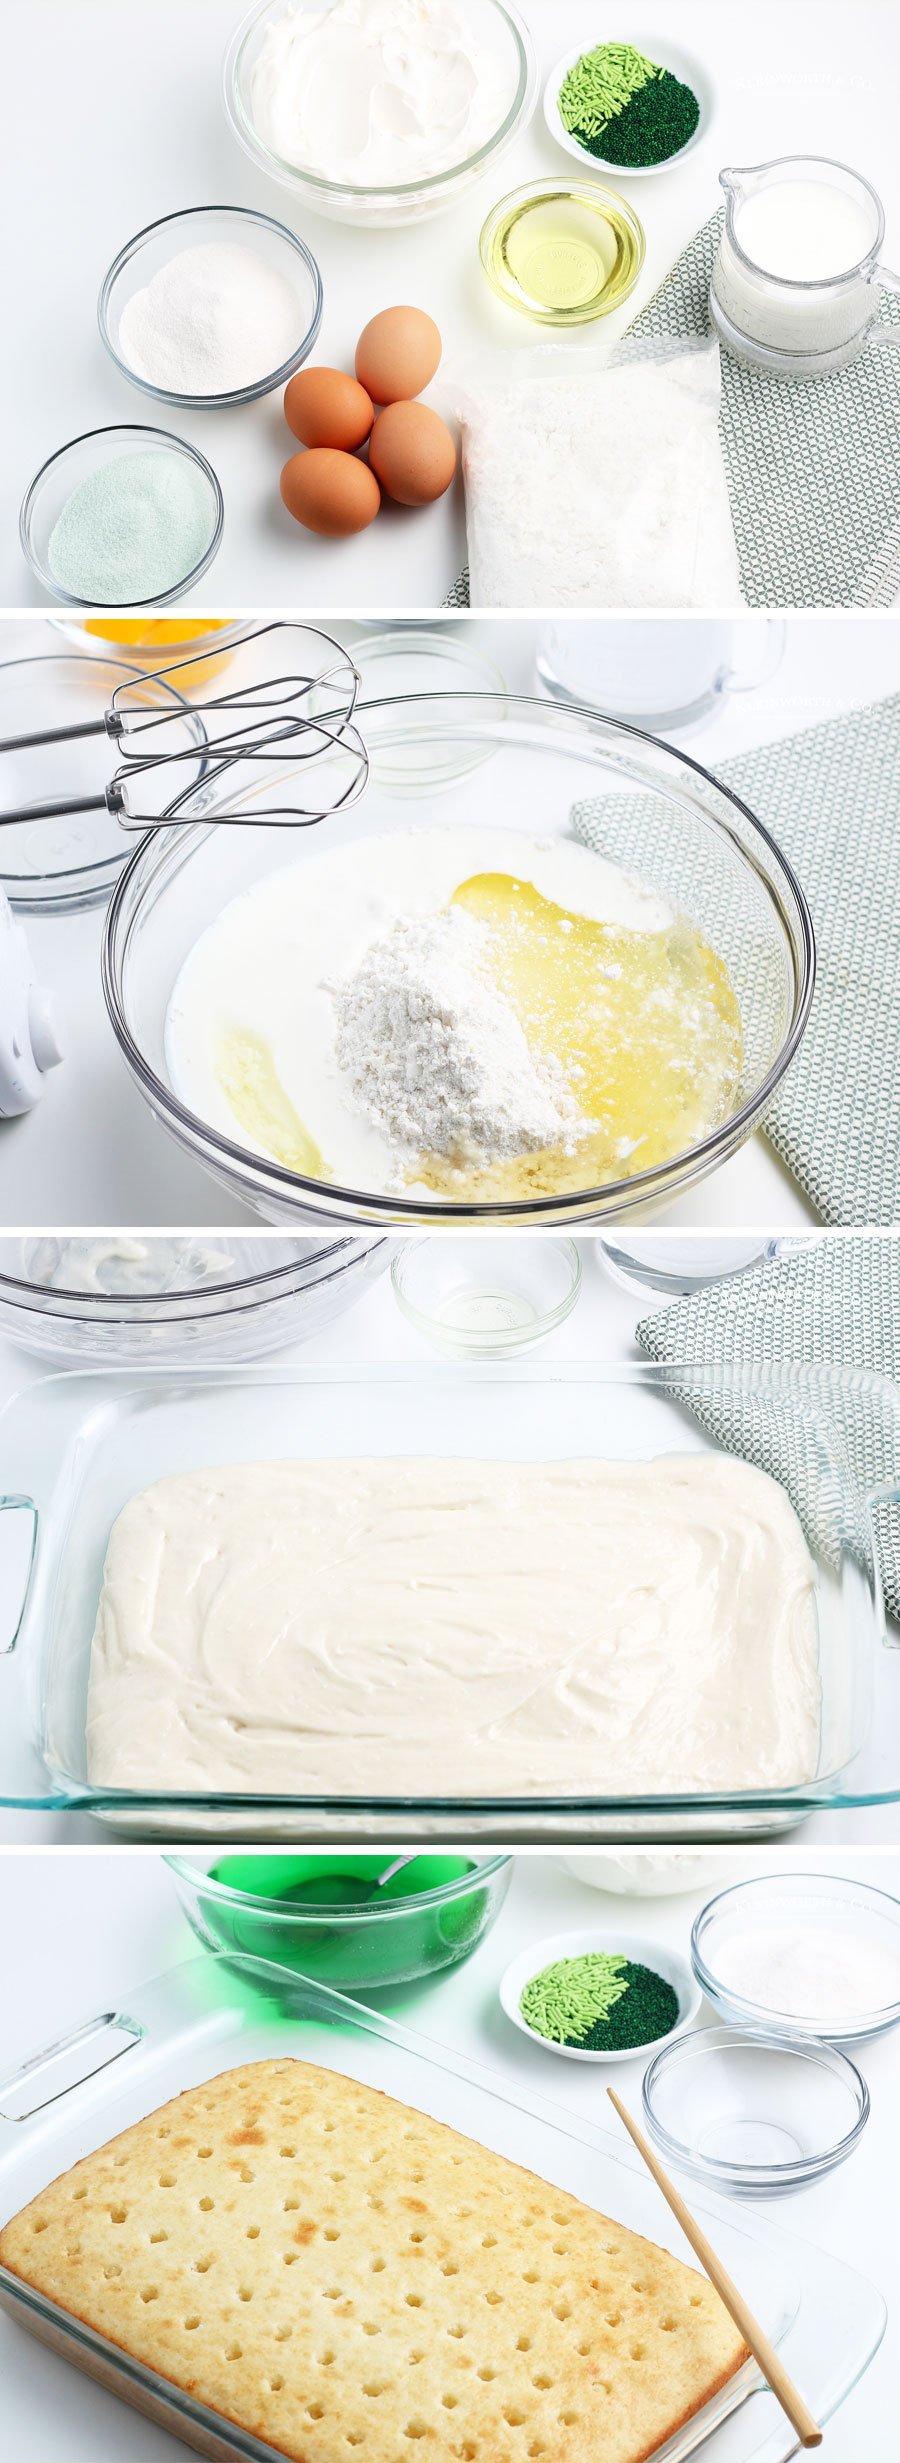 How to make Jello Poke Cake